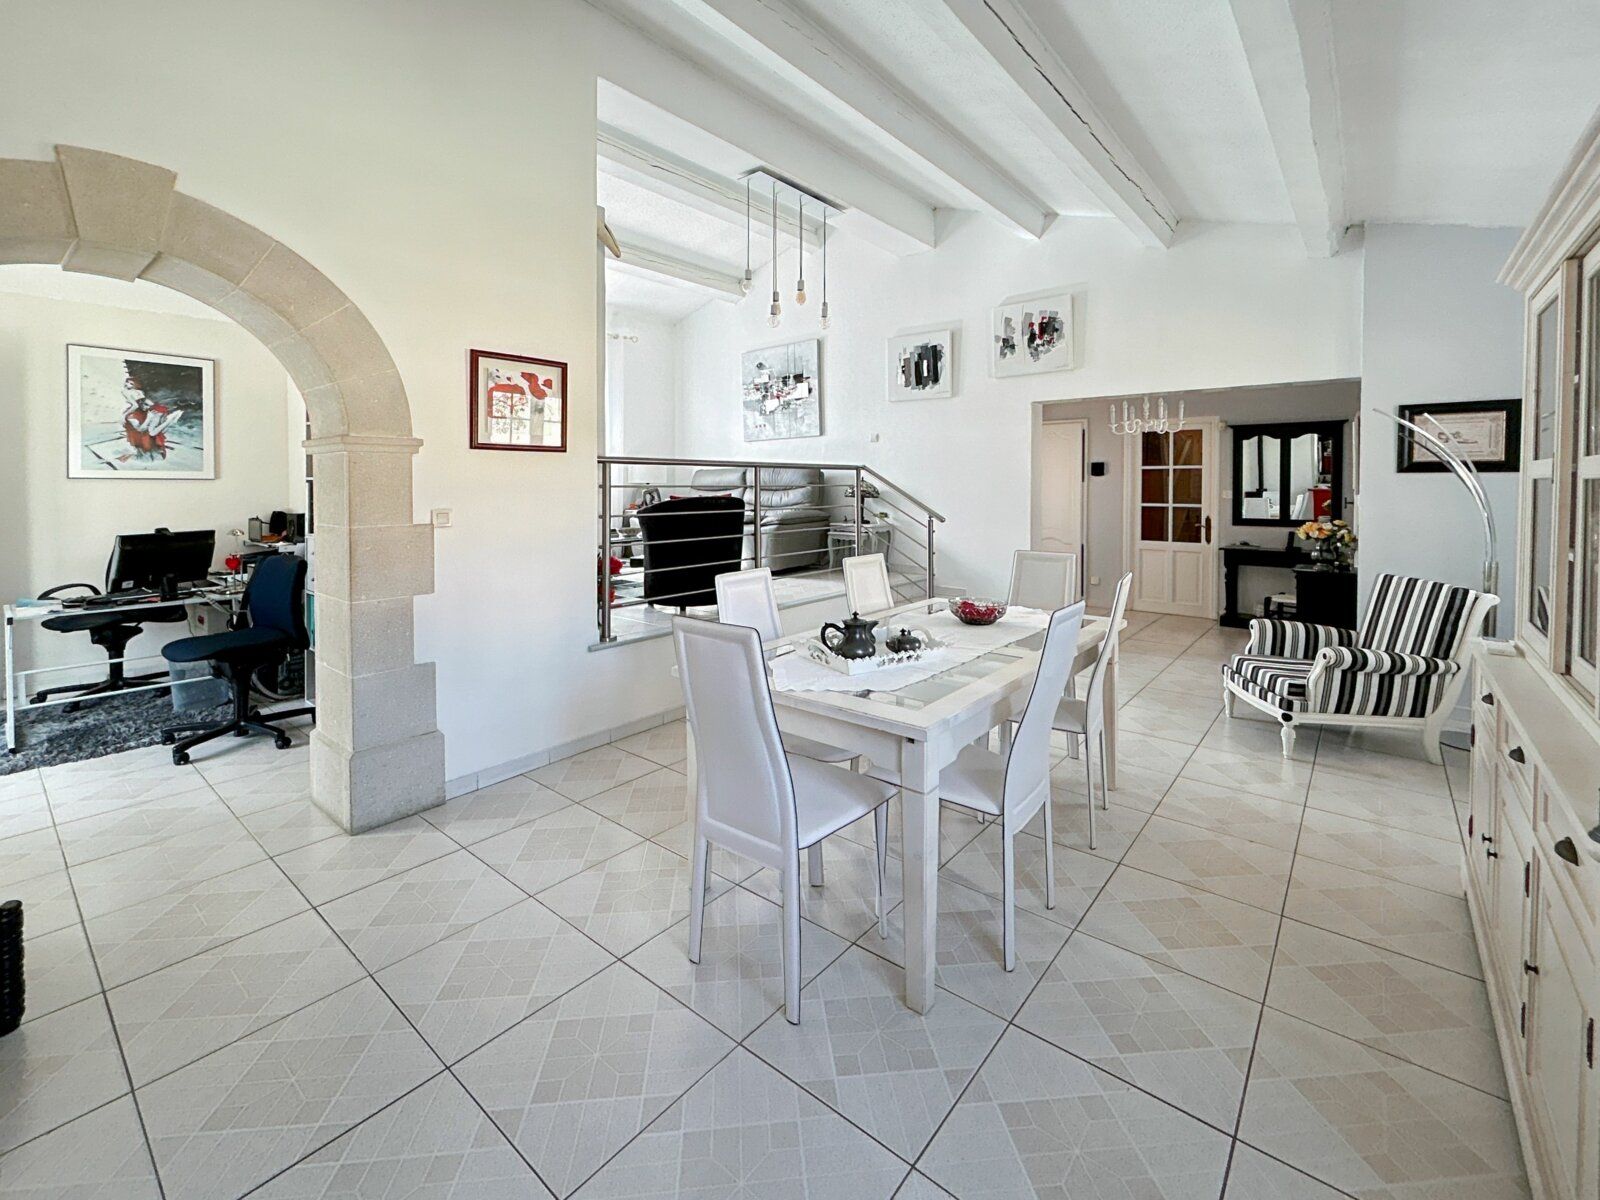 Maison à vendre 4 141m2 à Lieuran-lès-Béziers vignette-7